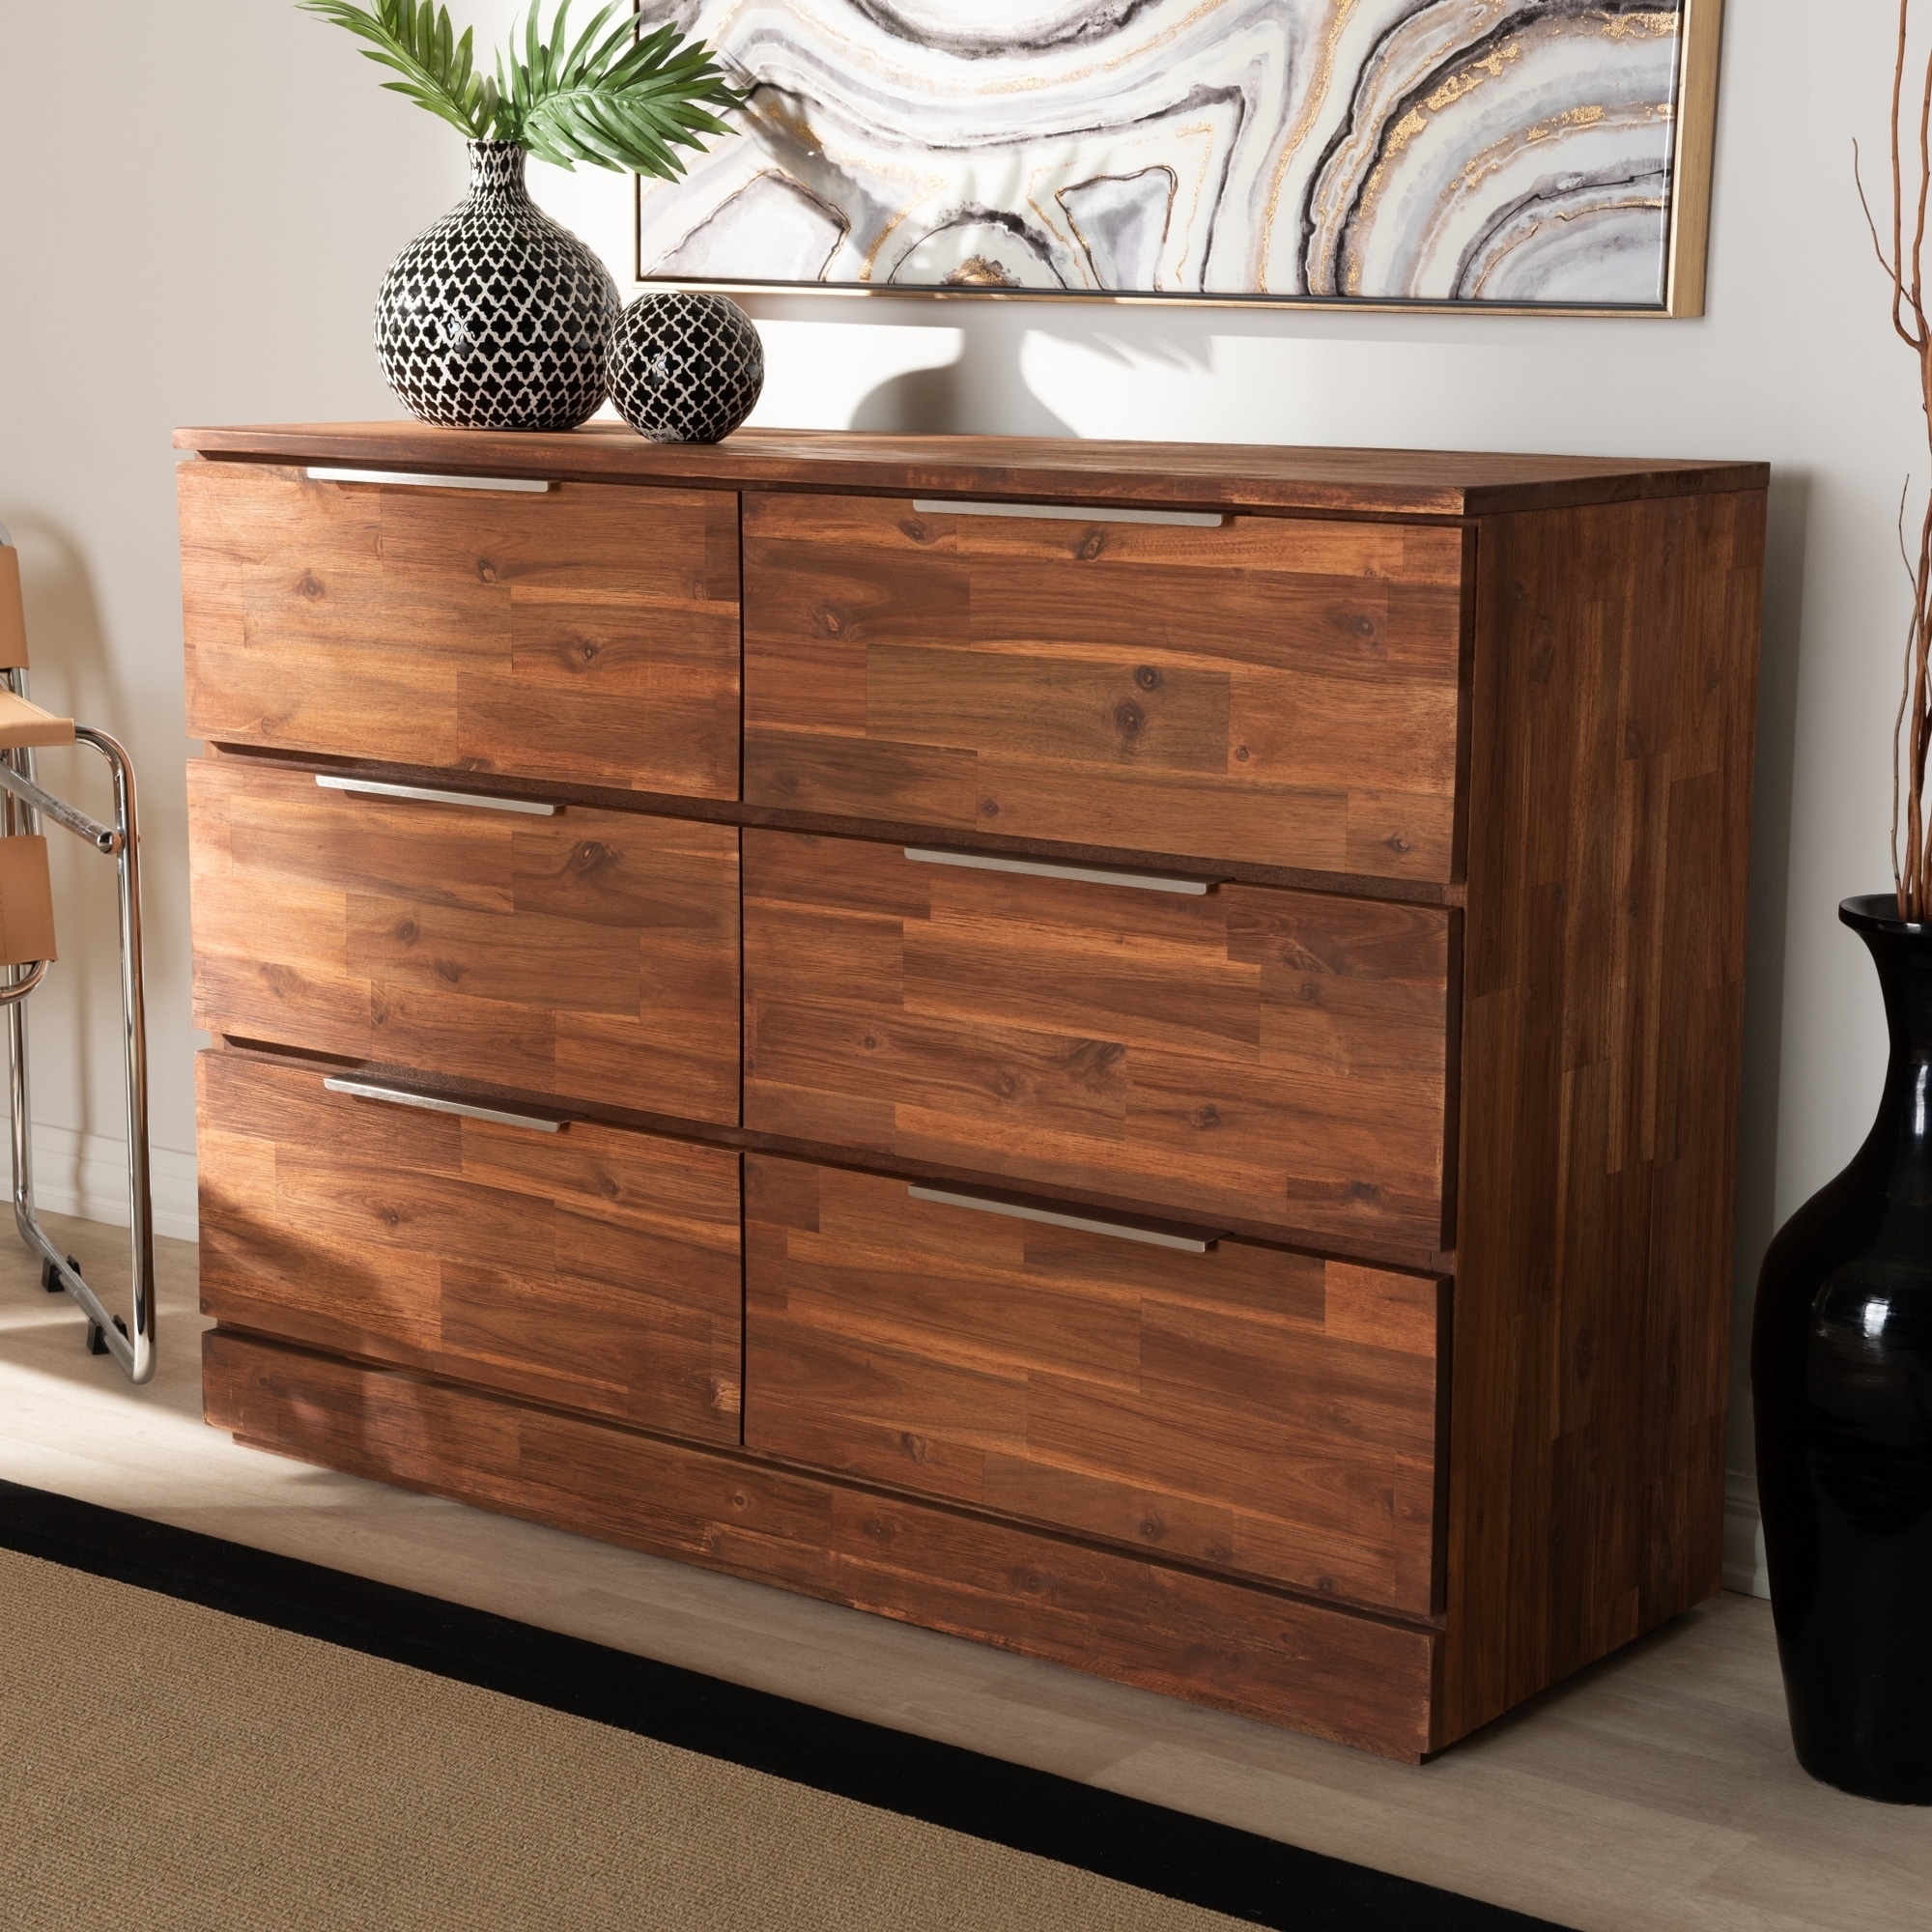 Shop Carbon Loft Sonique Studio Golden Oak Finish Wood 6 Drawer